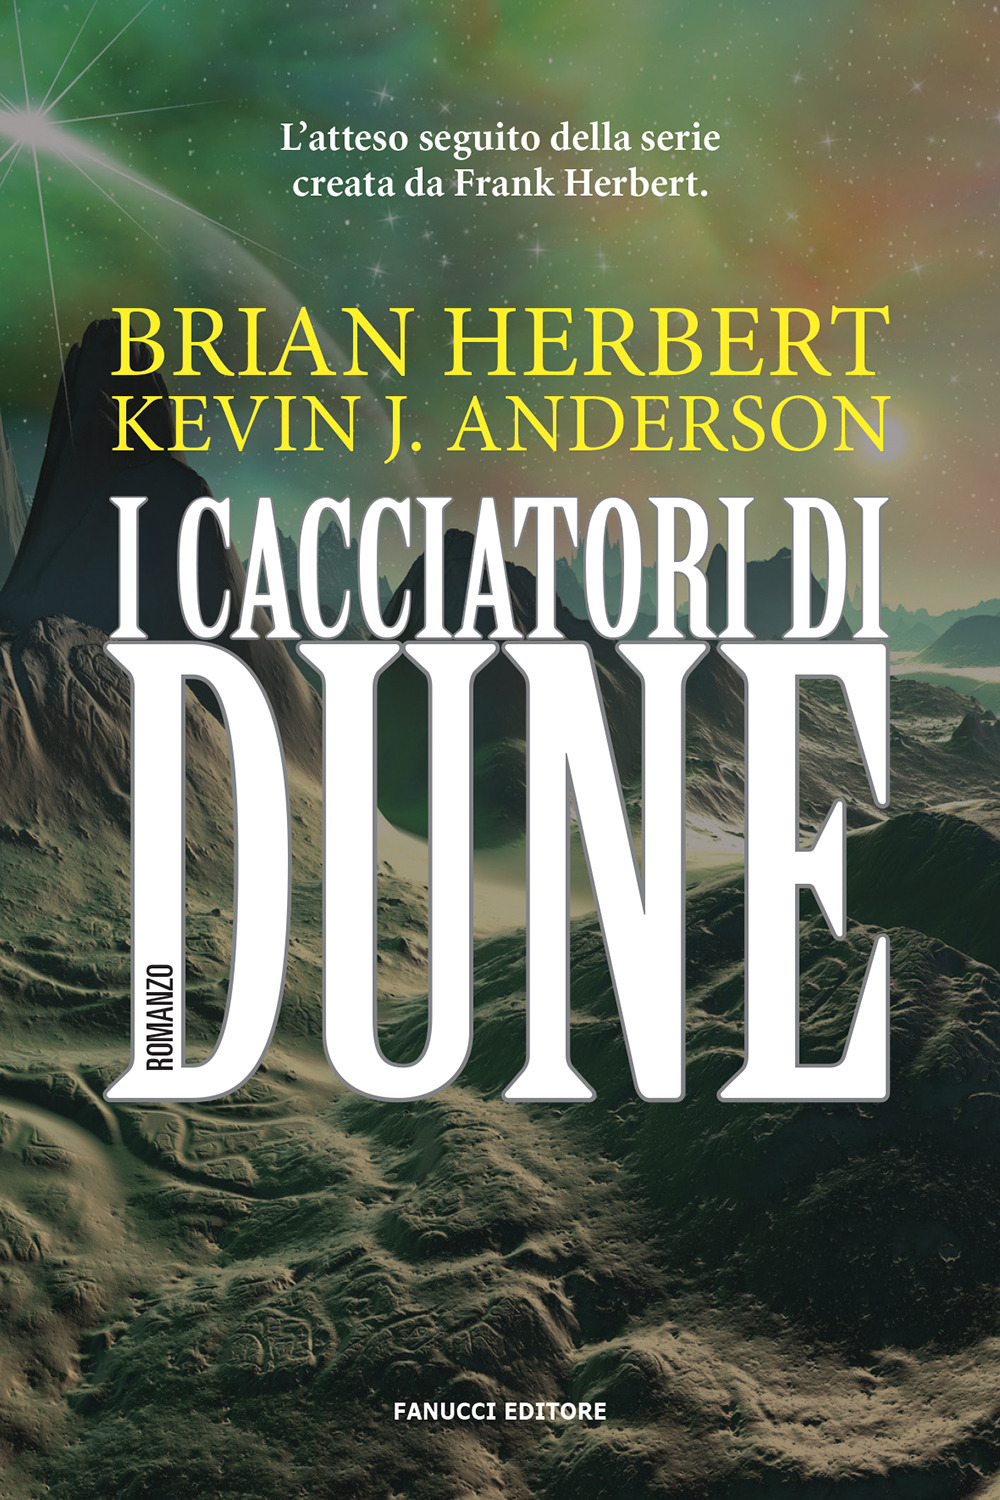 Libri Herbert Brian / Anderson Kevin J. - I Cacciatori Di Dune NUOVO SIGILLATO, EDIZIONE DEL 23/07/2020 SUBITO DISPONIBILE